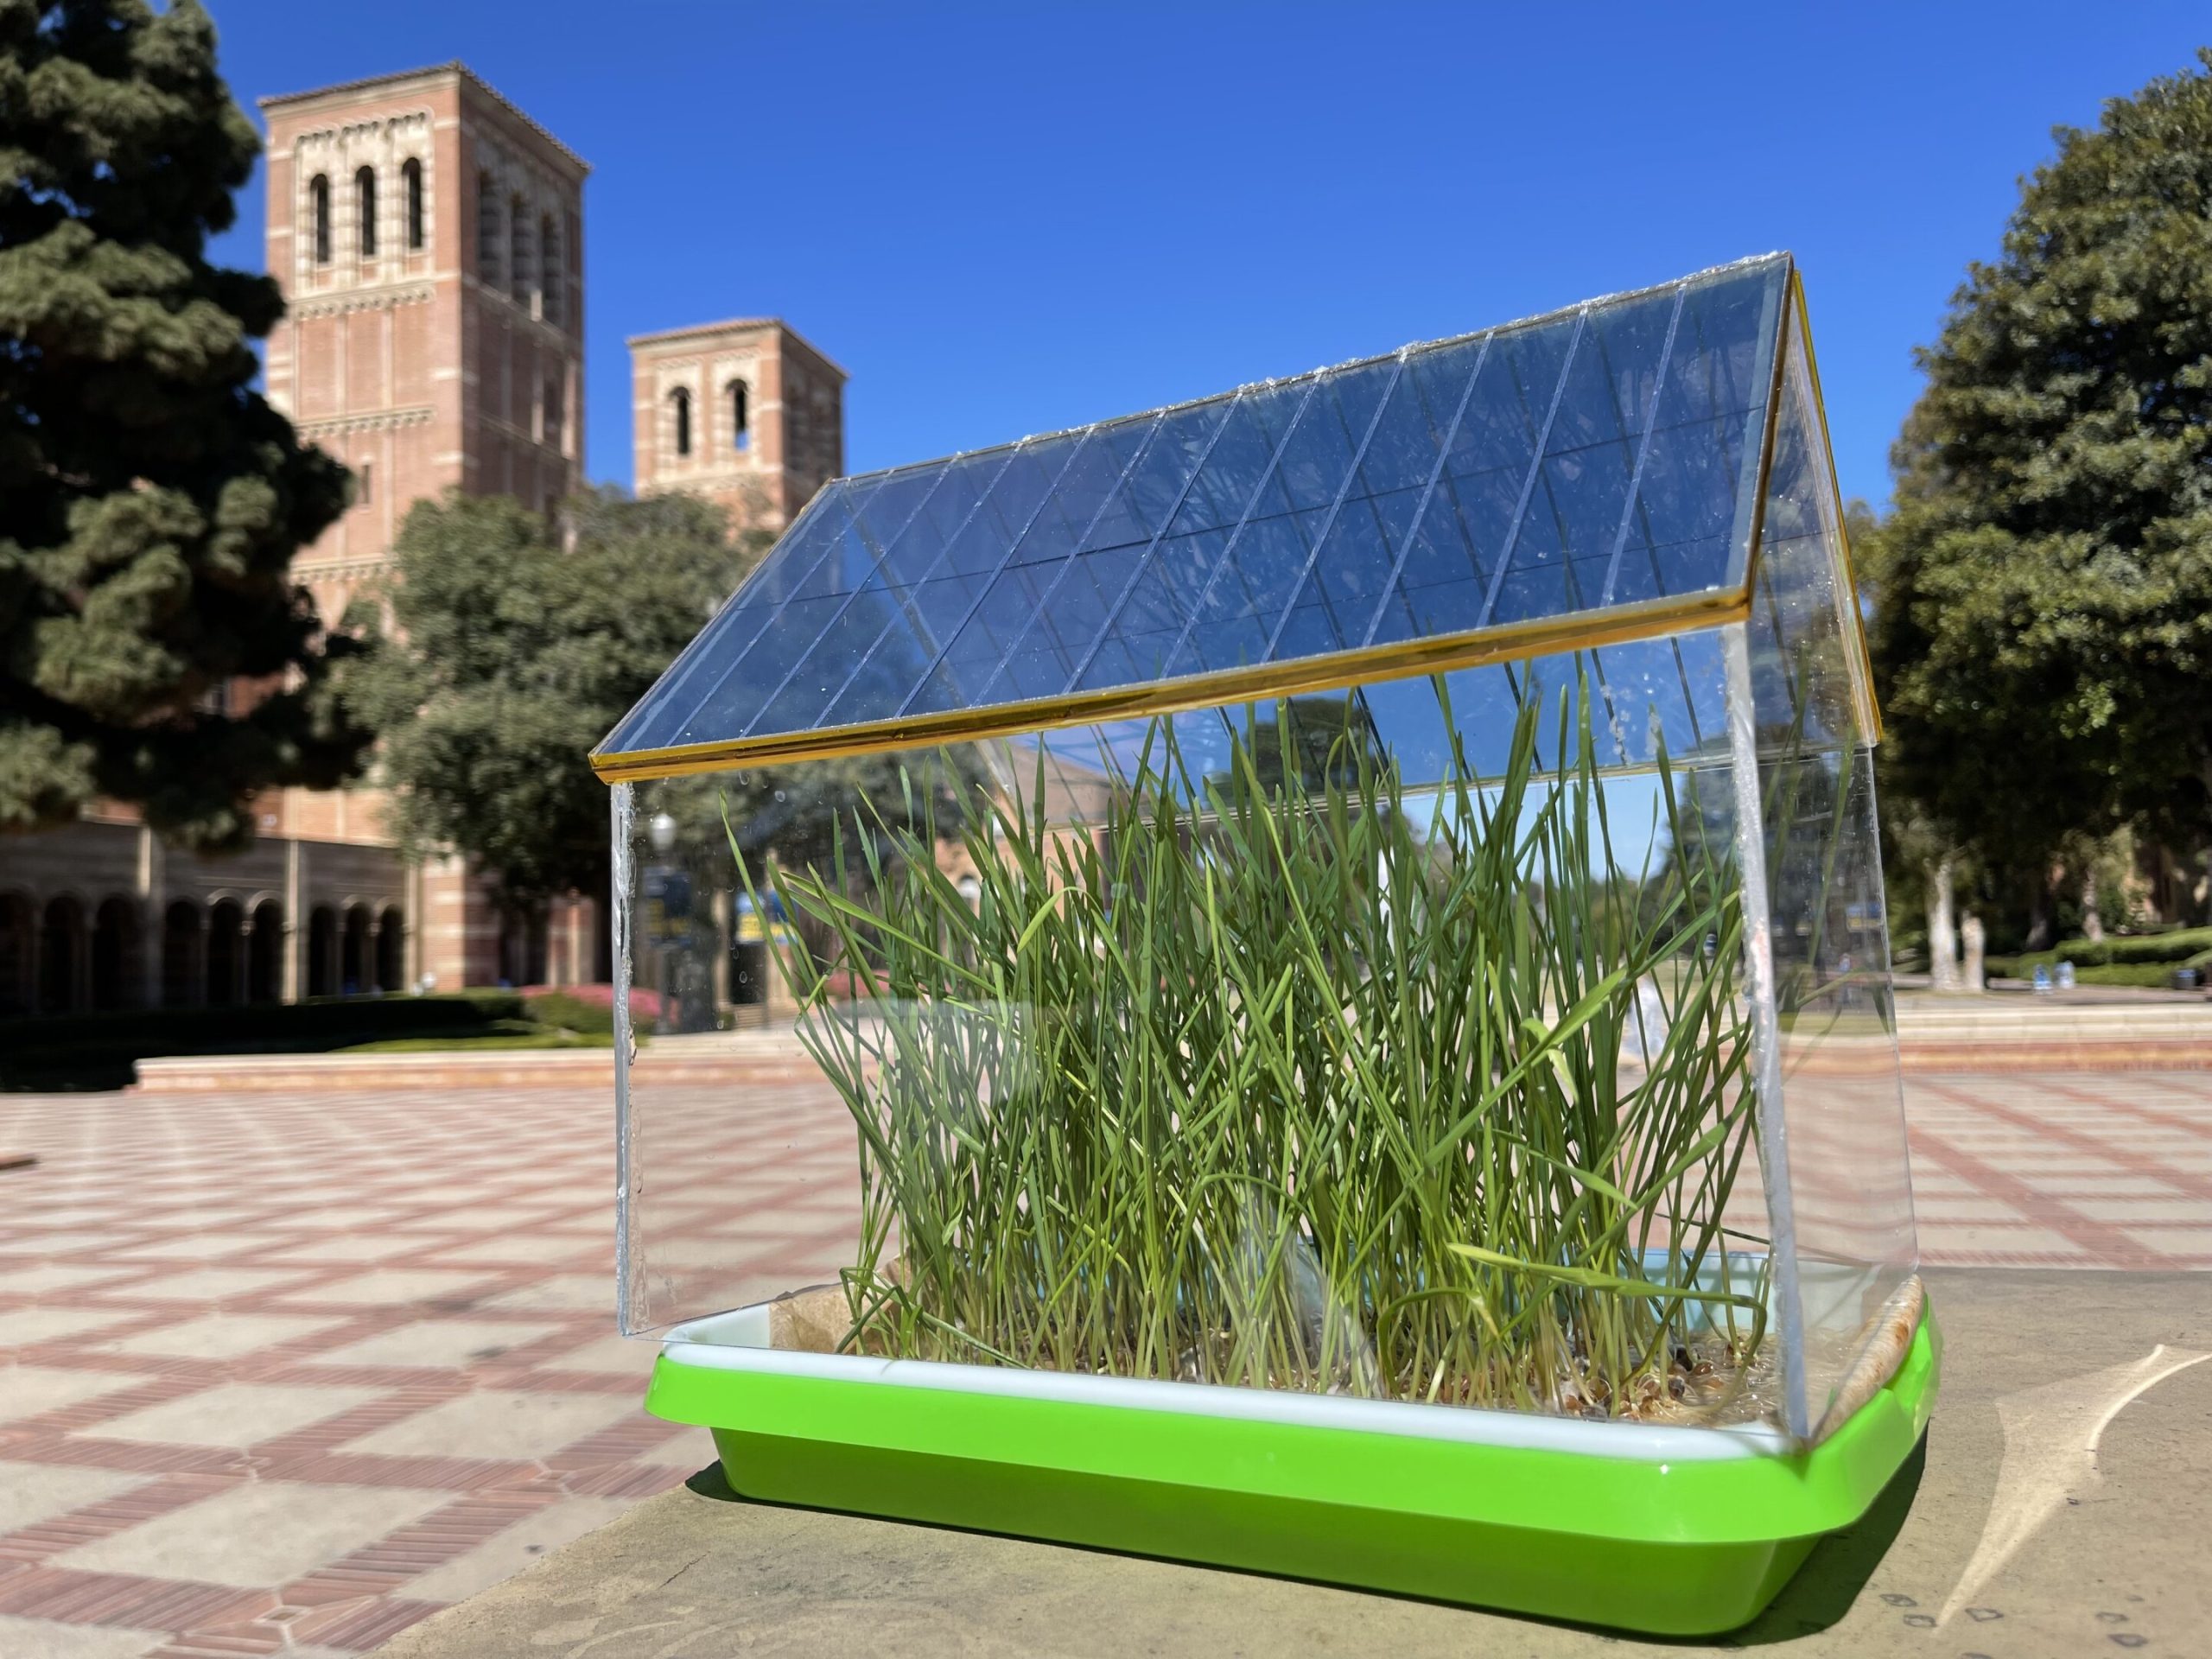 Cubiertas fotovoltaicas semitransparentes y eficientes gracias a los complementos alimenticios